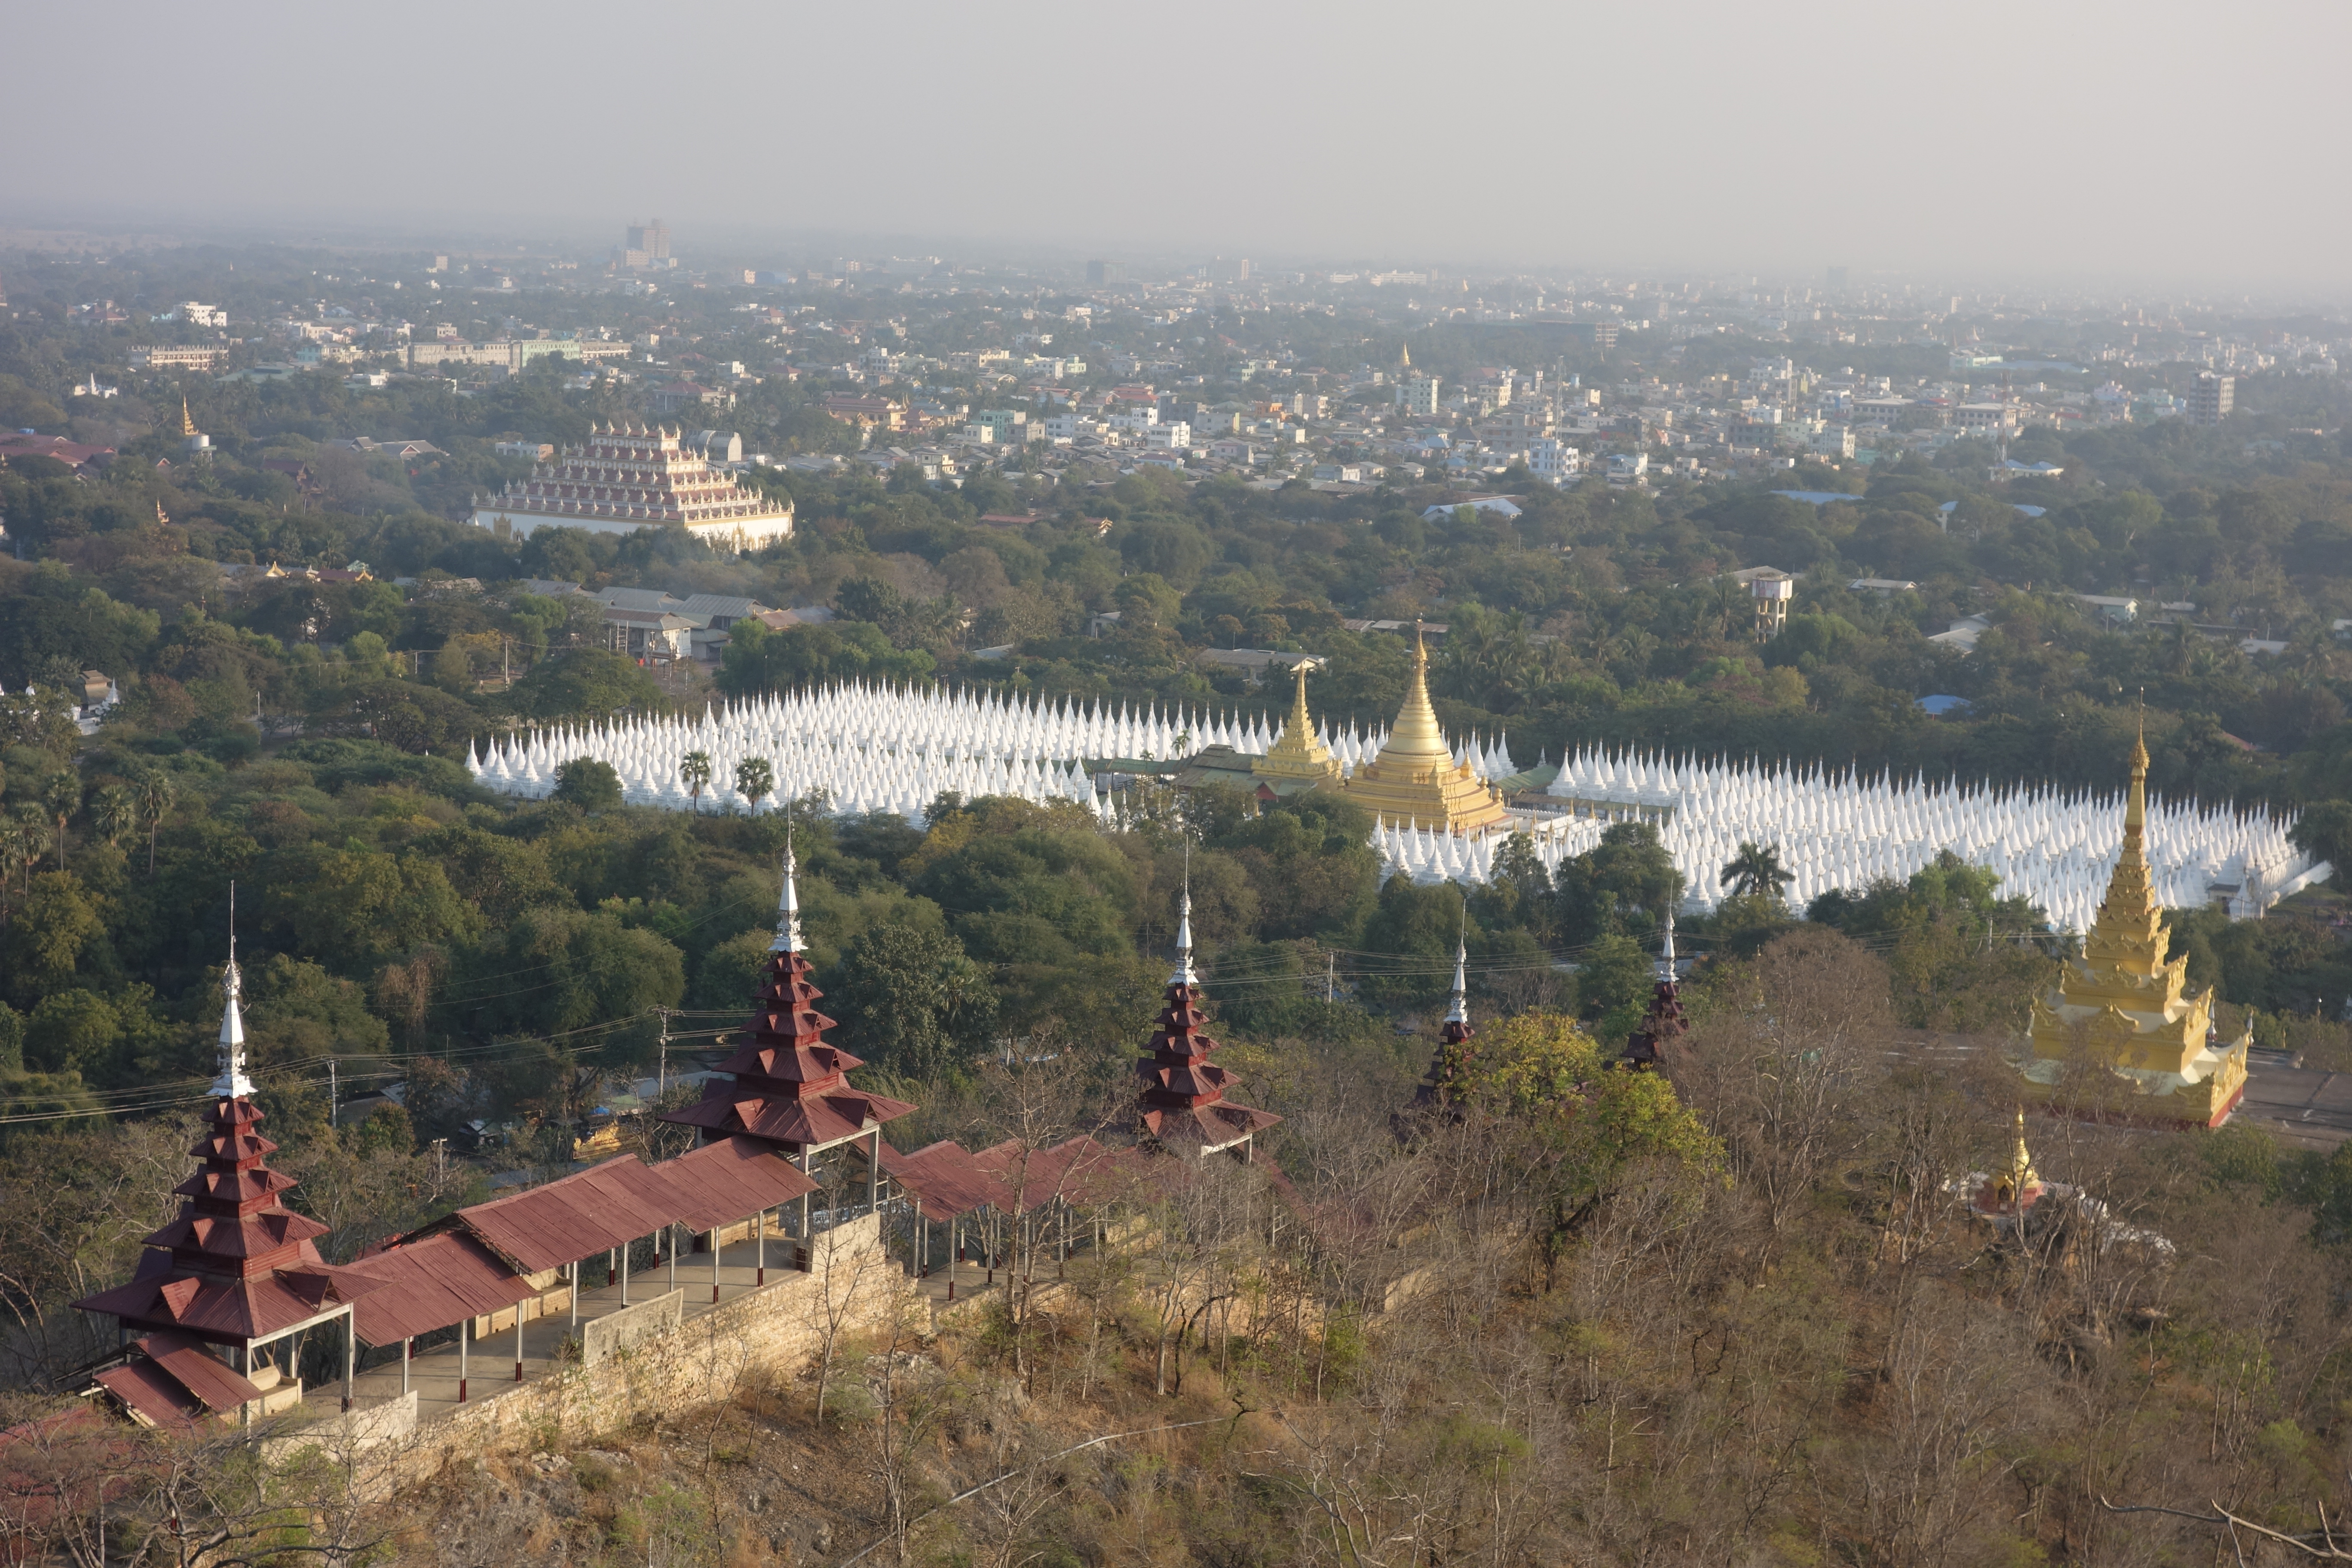 Vue au couché du soleil sur la Colline de Mandalay celle ou Bouddha est venu monter photo blog voyage tour du monde https://yoytourdumonde.fr